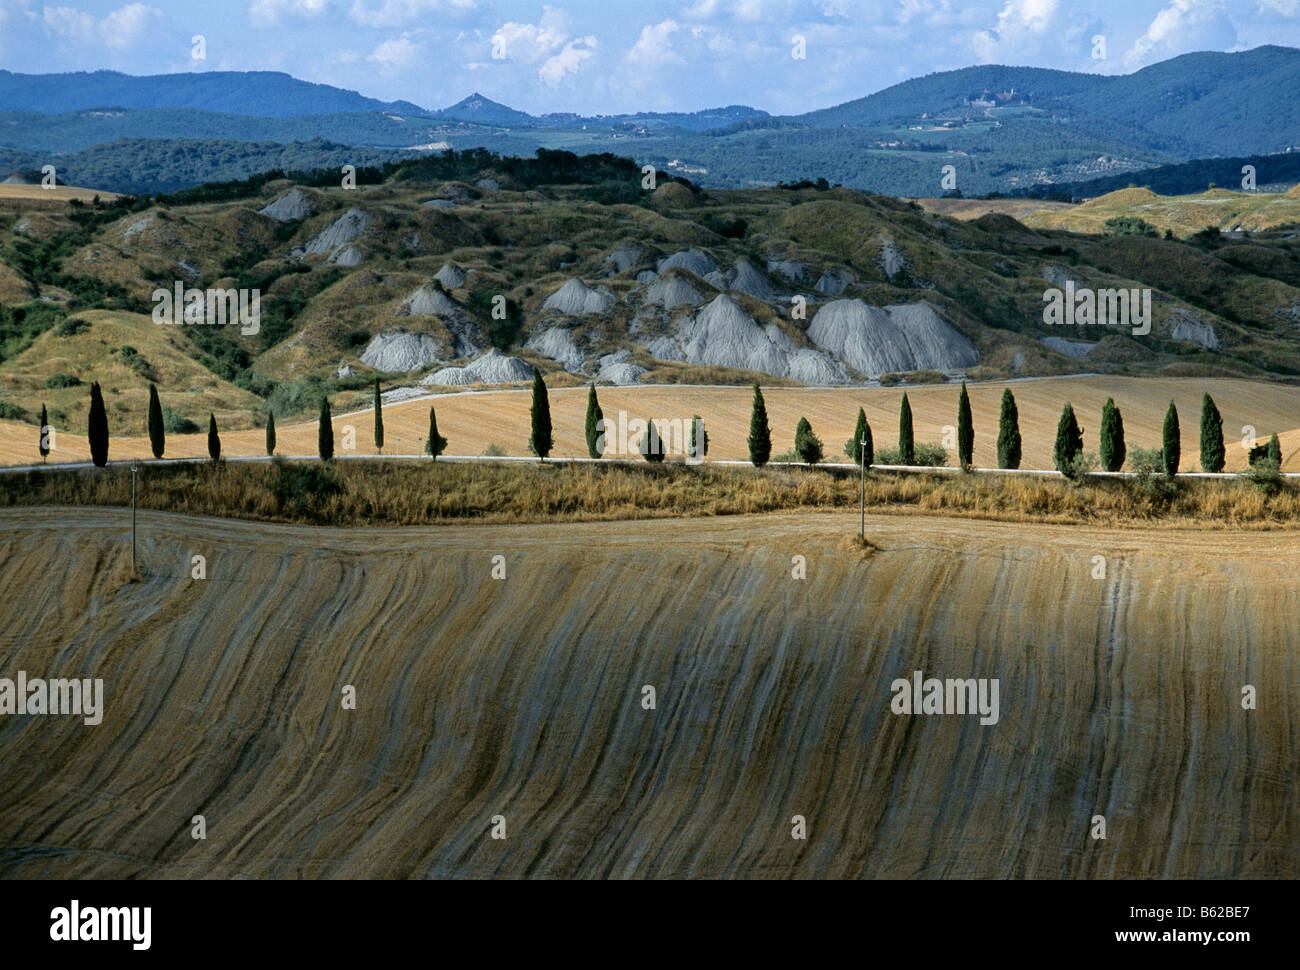 Chipre alley ejecutando a través de campos de trigo cosechado, Le Creta cerca de Pievina, provincia de Siena, Toscana, Italia, Europa Foto de stock